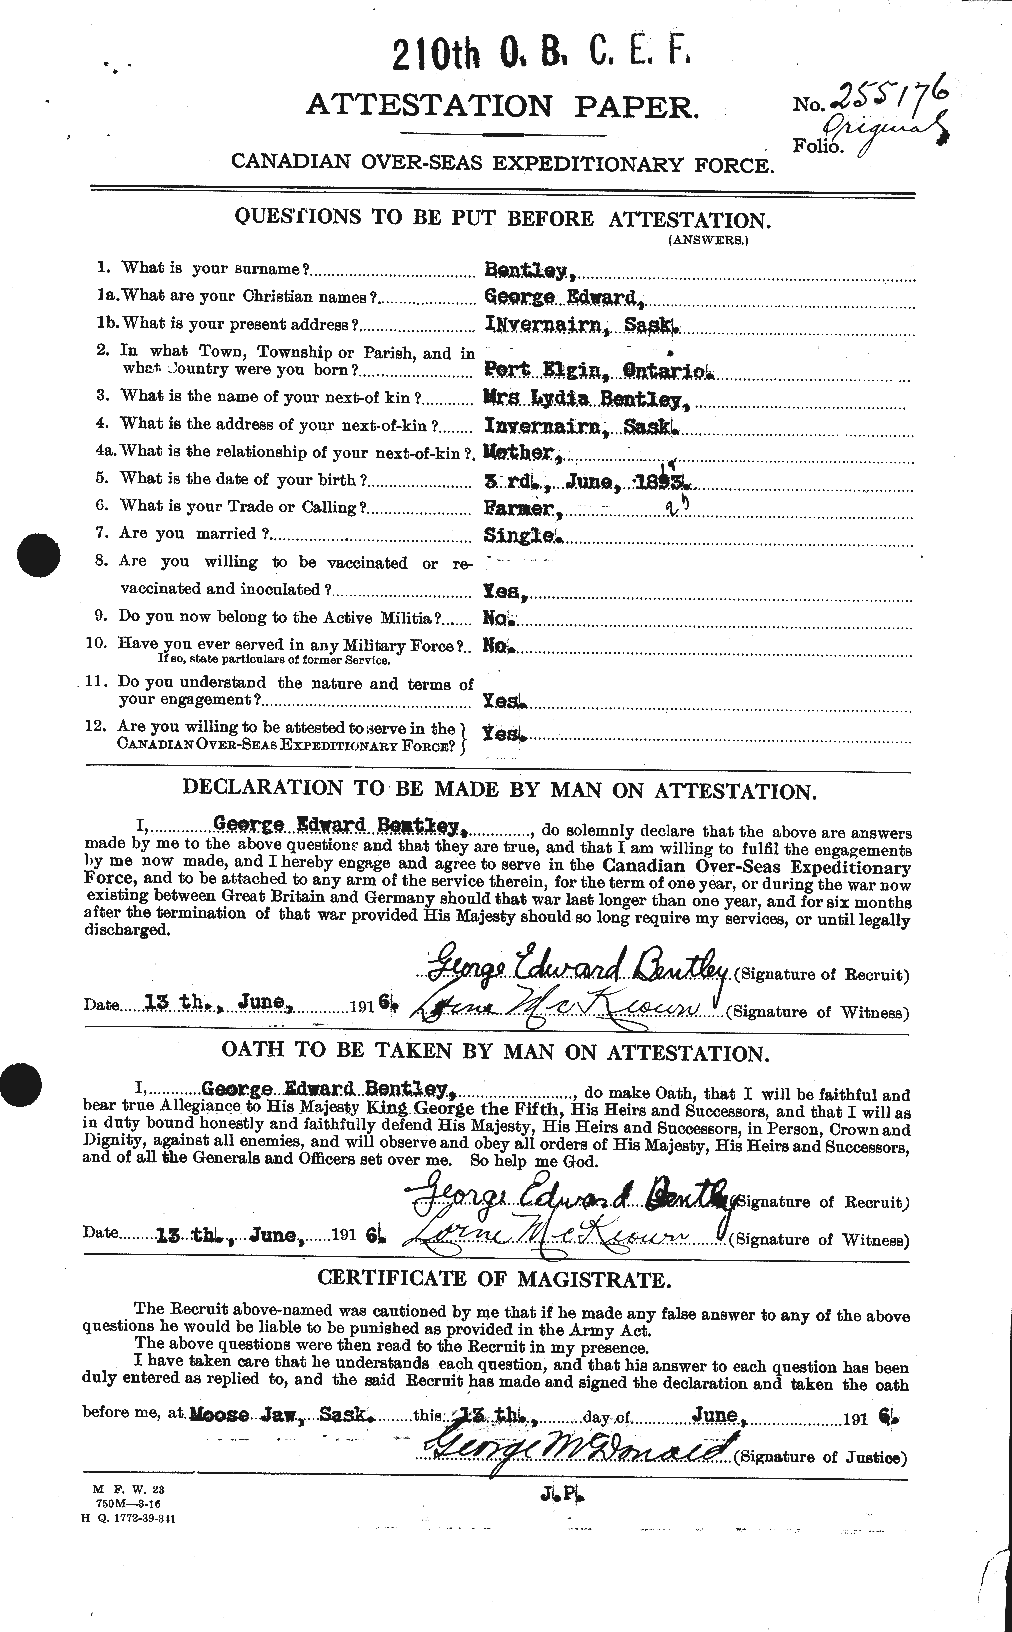 Dossiers du Personnel de la Première Guerre mondiale - CEC 237917a